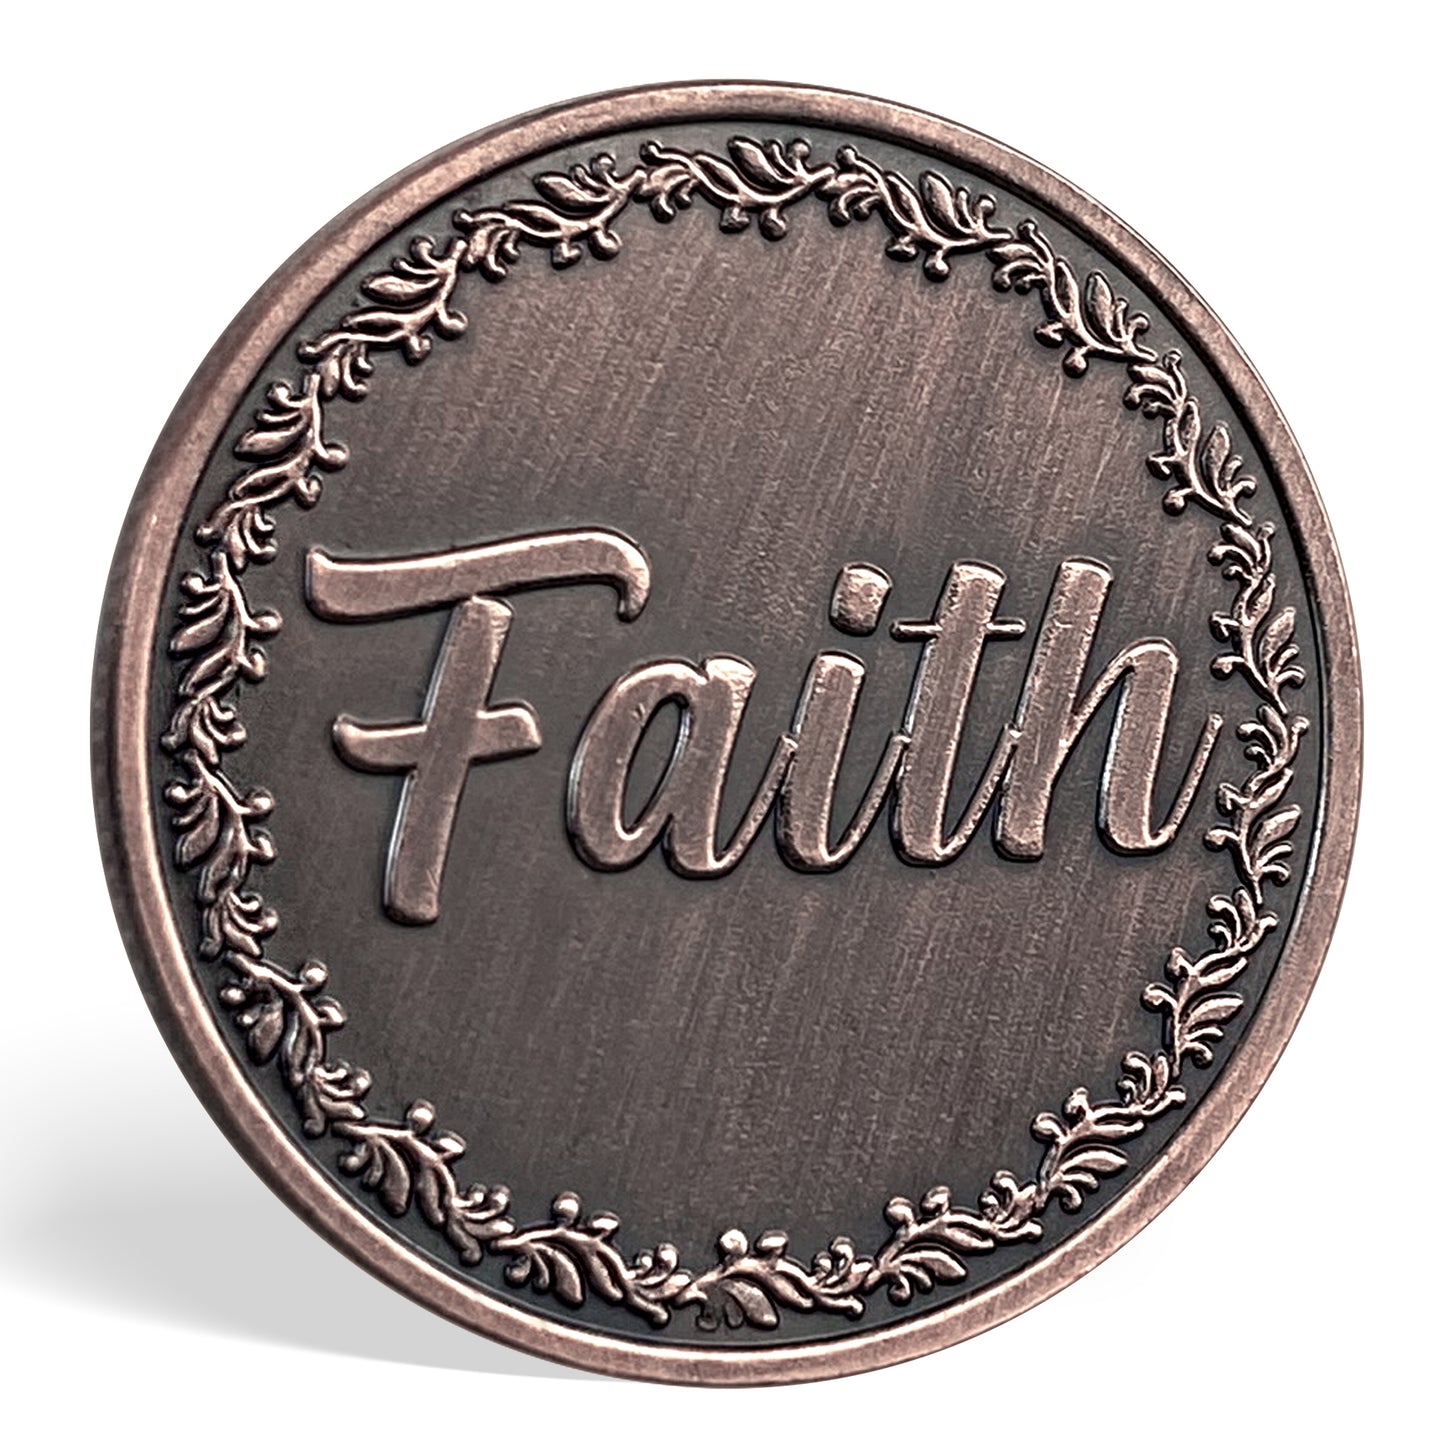 Cross and Faith Metal Game Token Coin